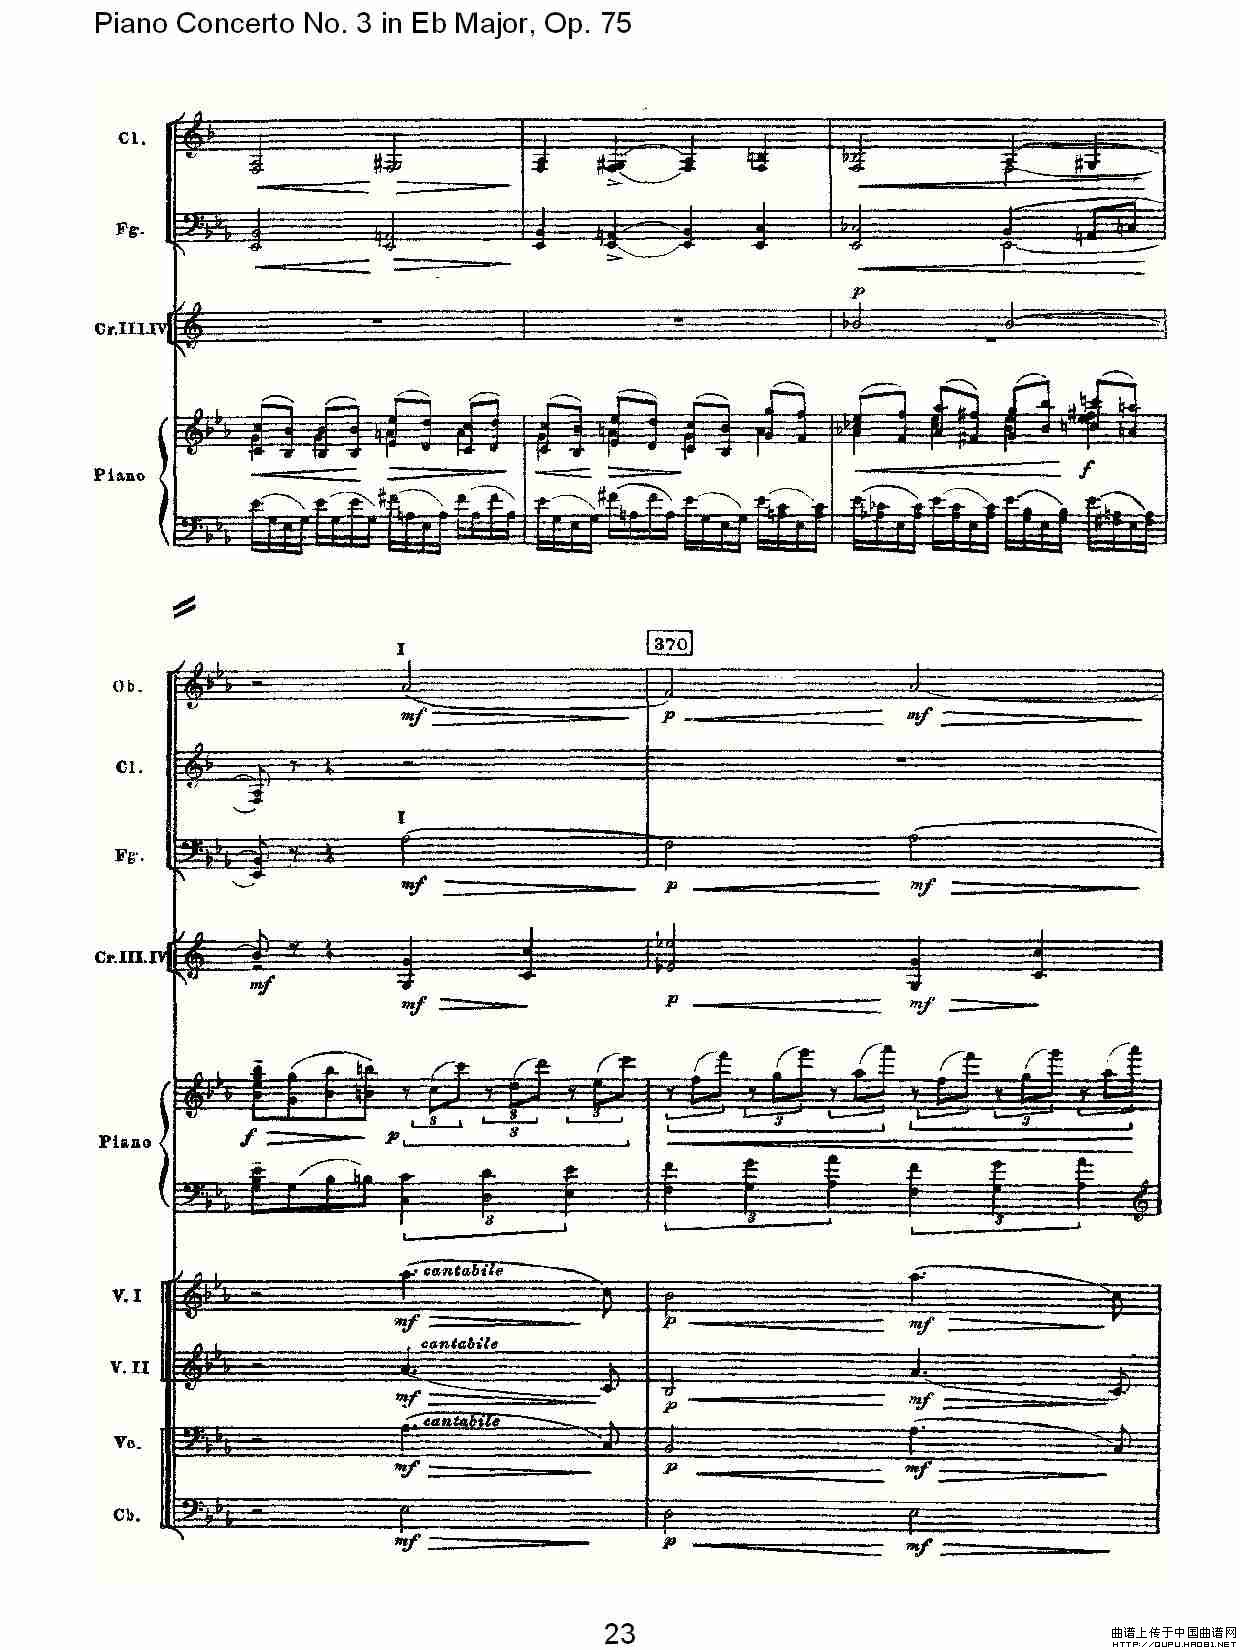 Piano Concerto No.3 in Eb Major, Op.75（Eb大调第三钢琴协奏）(1)_原文件名：Piano Concerto No.3 in Eb Major, Op.7525.jpg